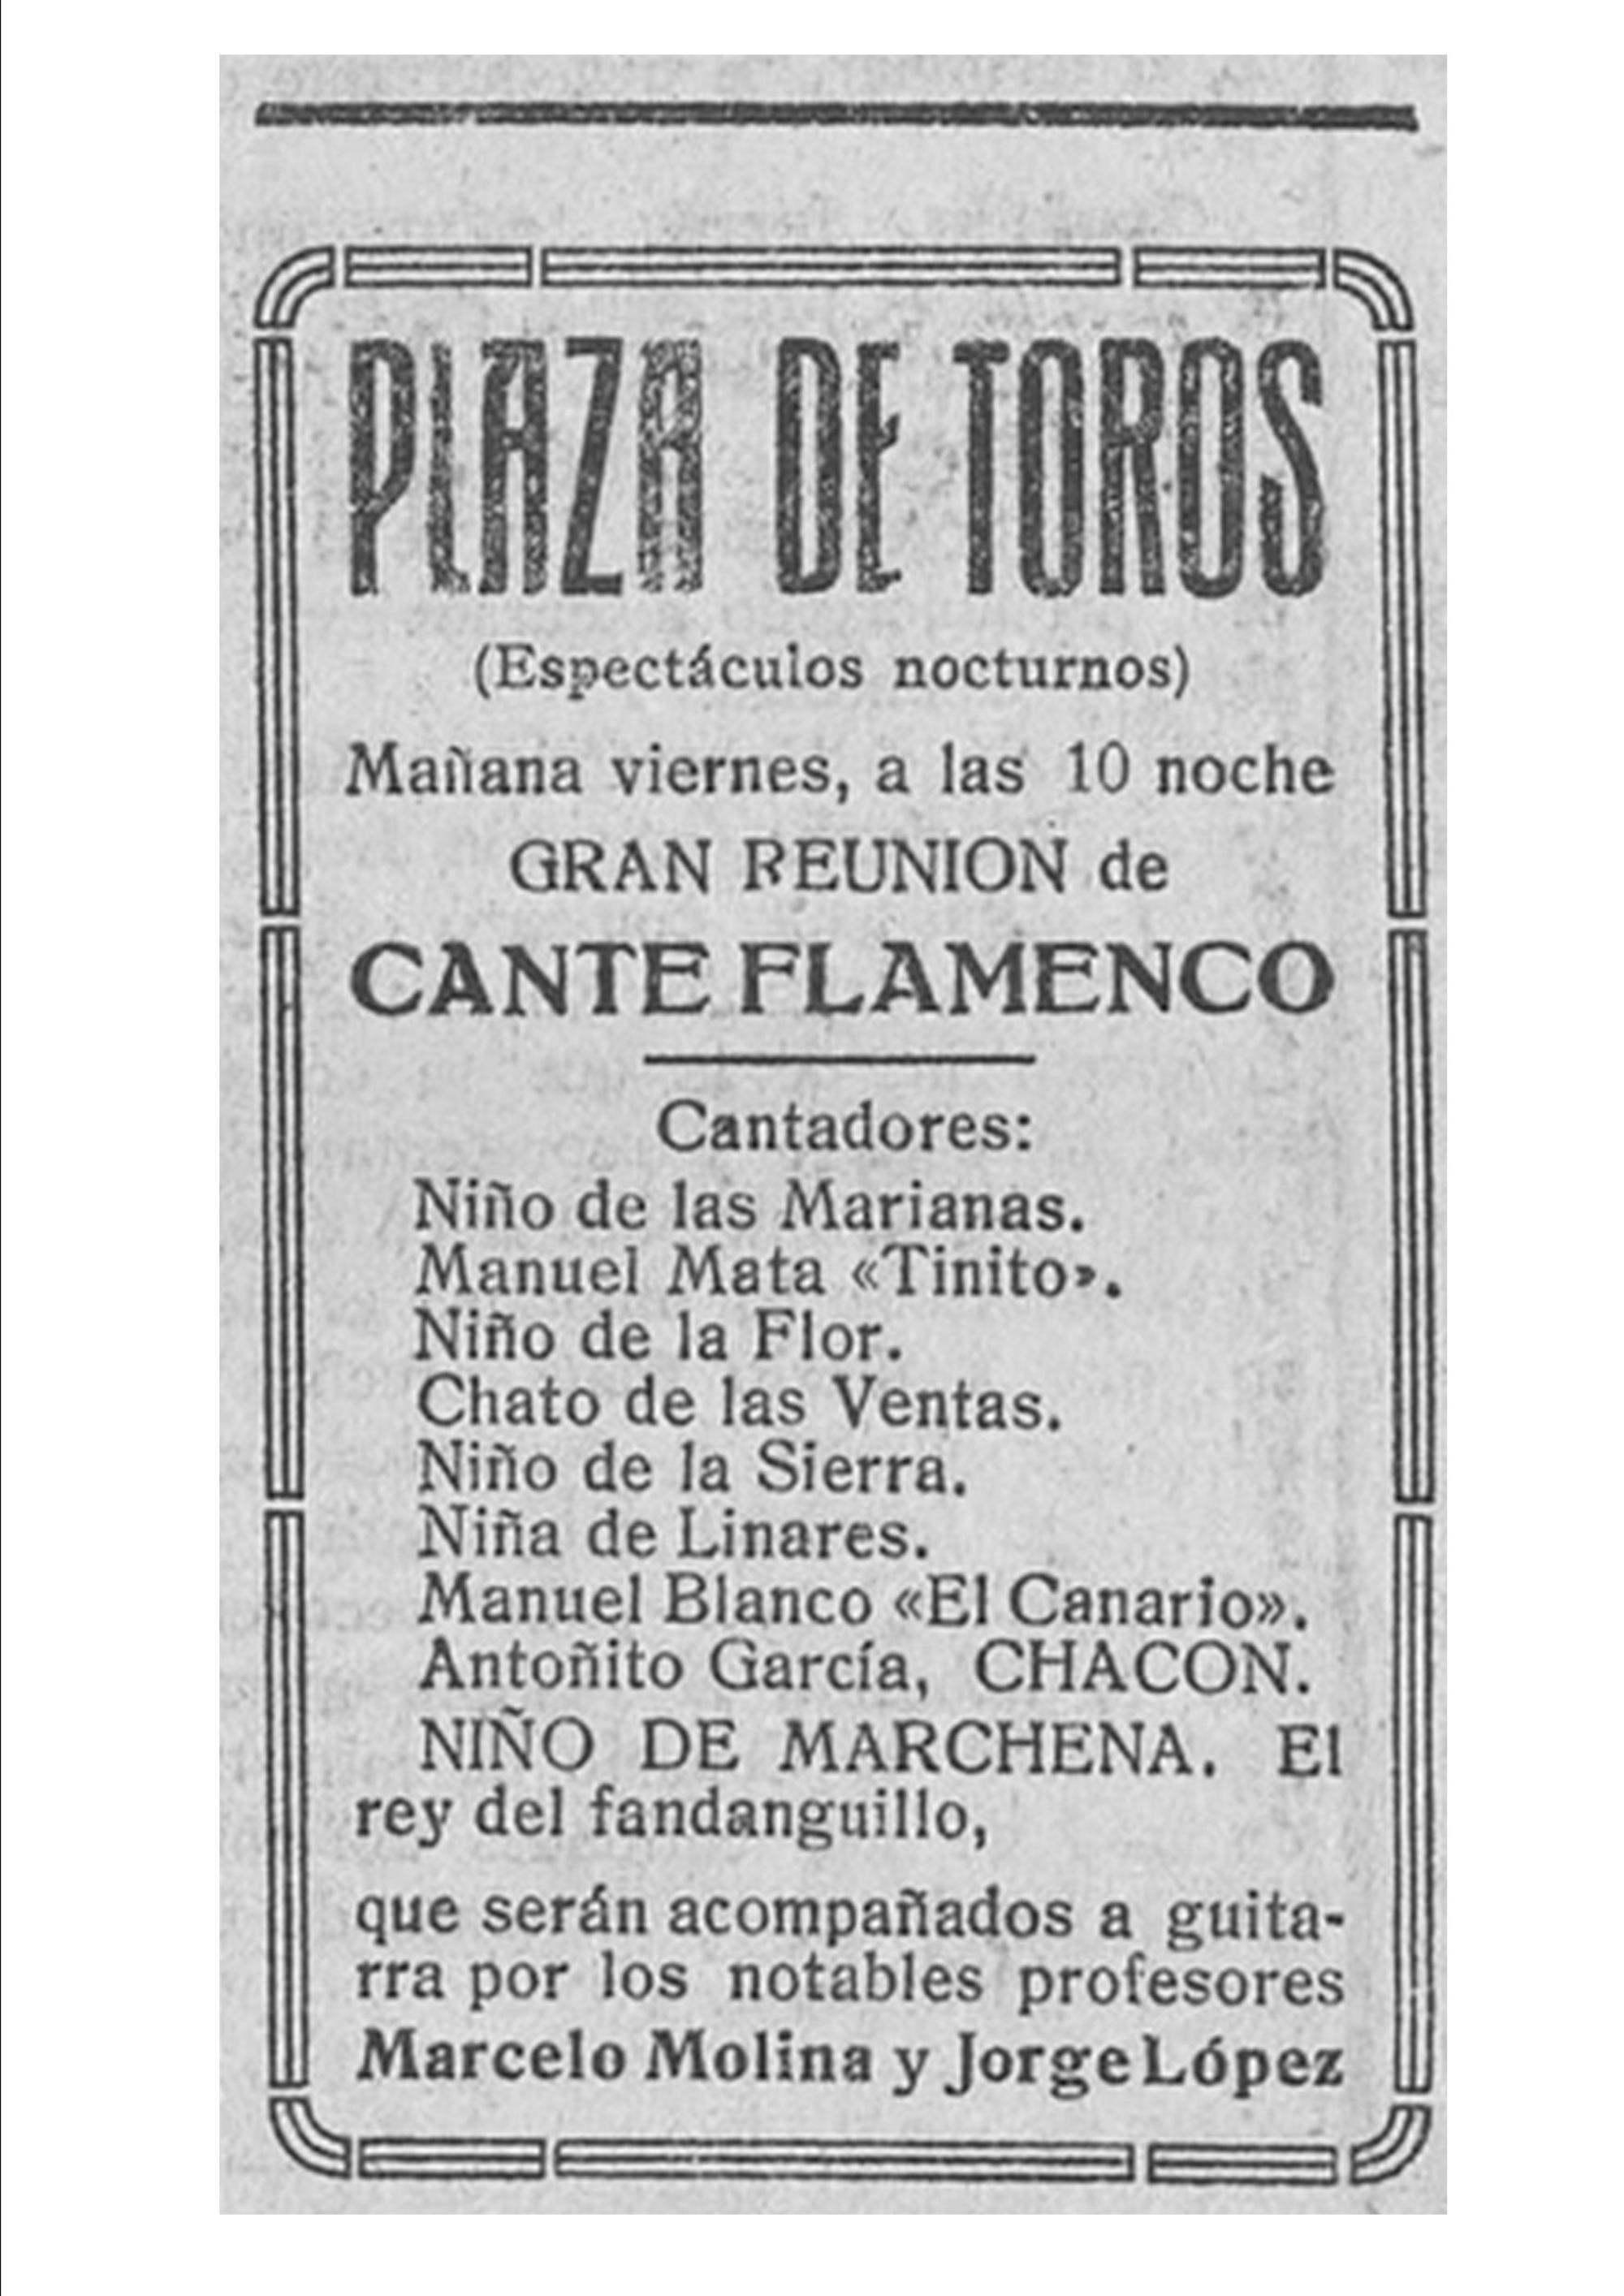 La Correspondencia de Valencia, 1926